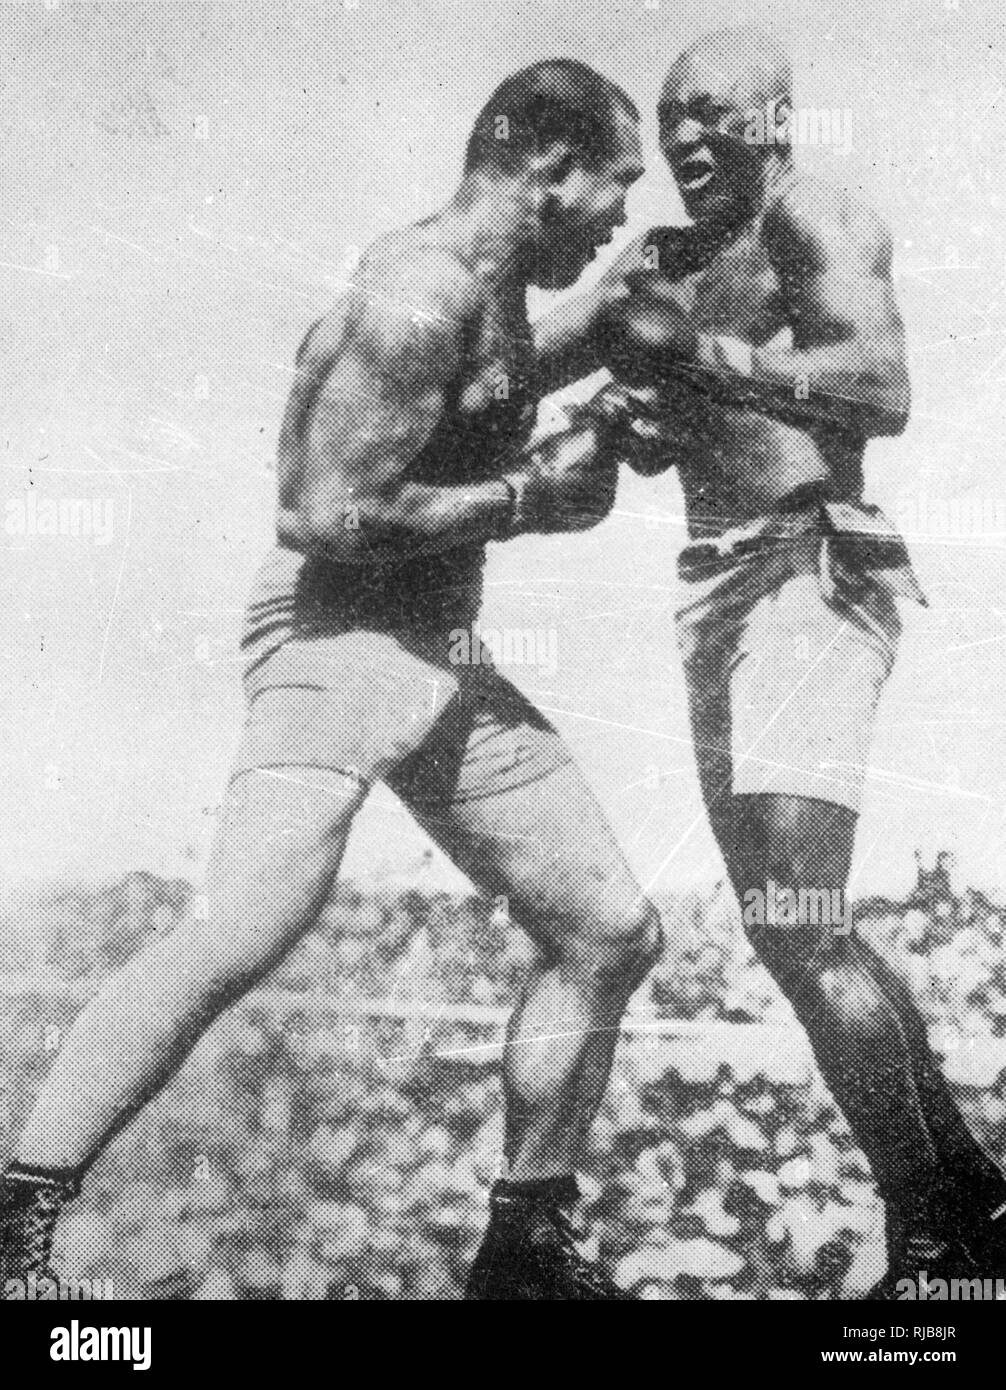 Beau Jack, amerikanischer Boxer, in einem Boxkampf Stockfoto